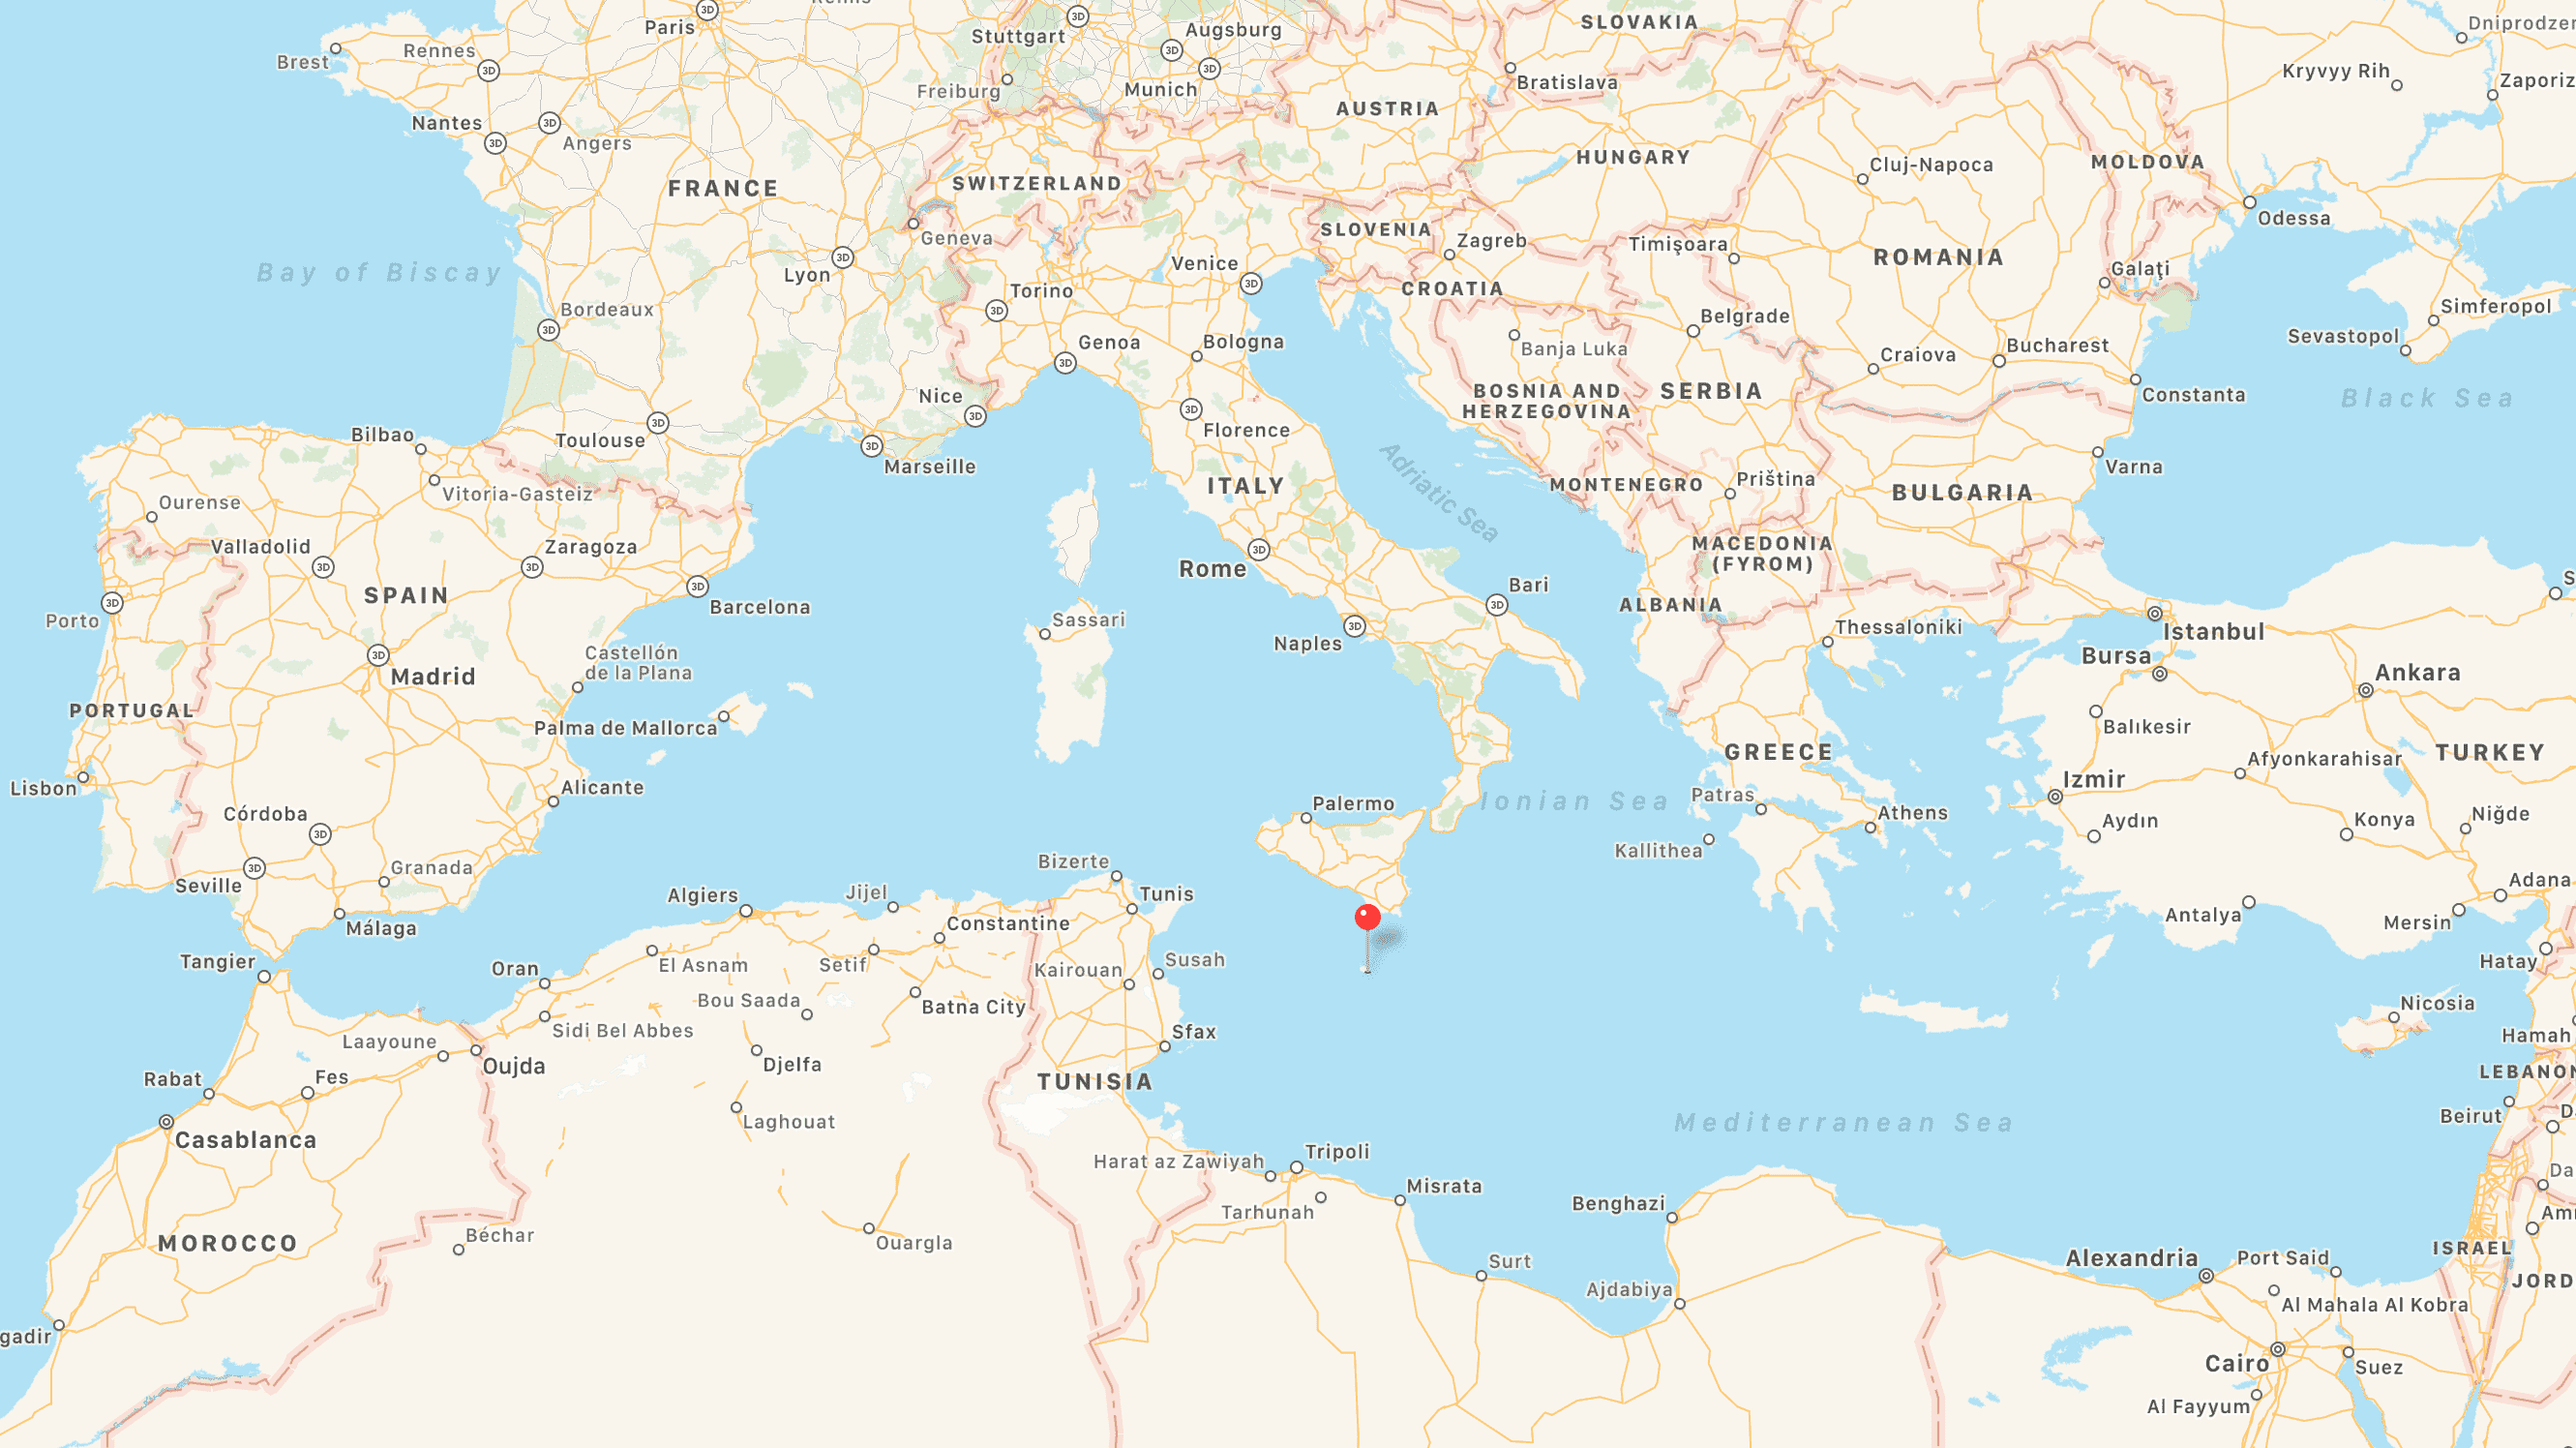 χάρτης με τις μεσογειακές χώρες και πινέζα στα χωρικά ύδατα της Μάλτας 